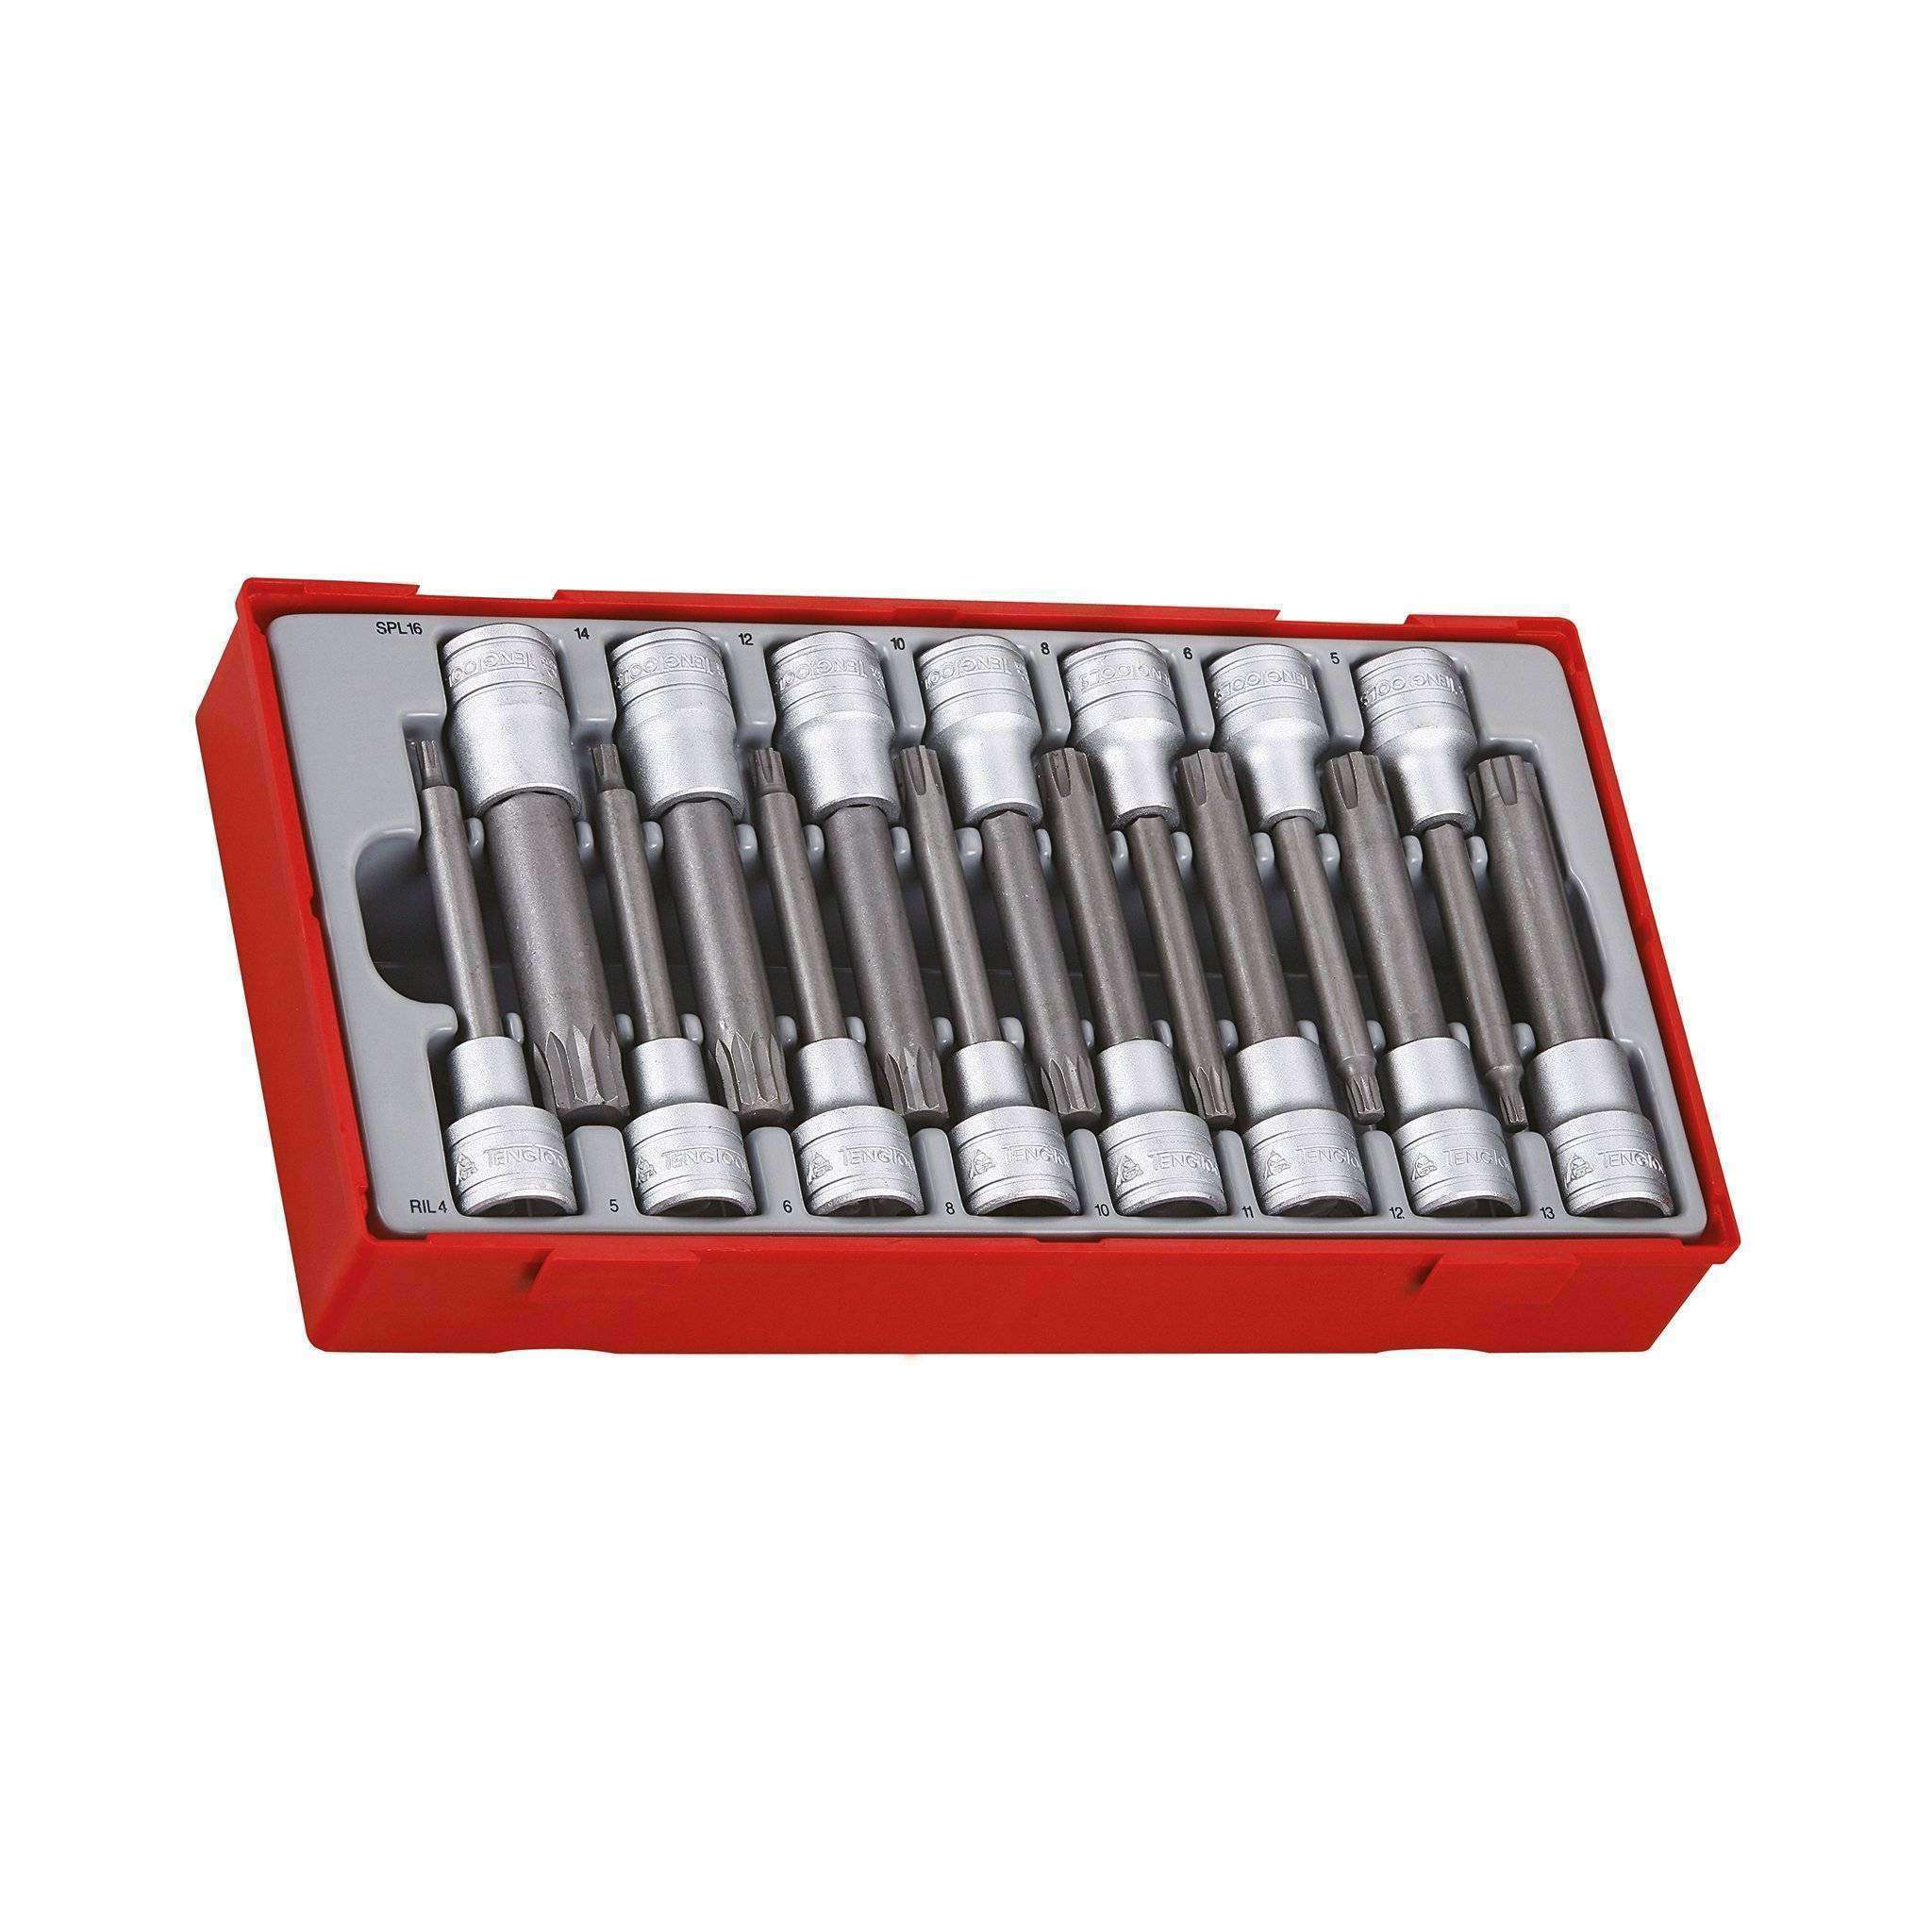 Teng Tools 15 Piece 1/2 Inch Drive Ribe & Spline Socket Set Tool Tray - TTRS15